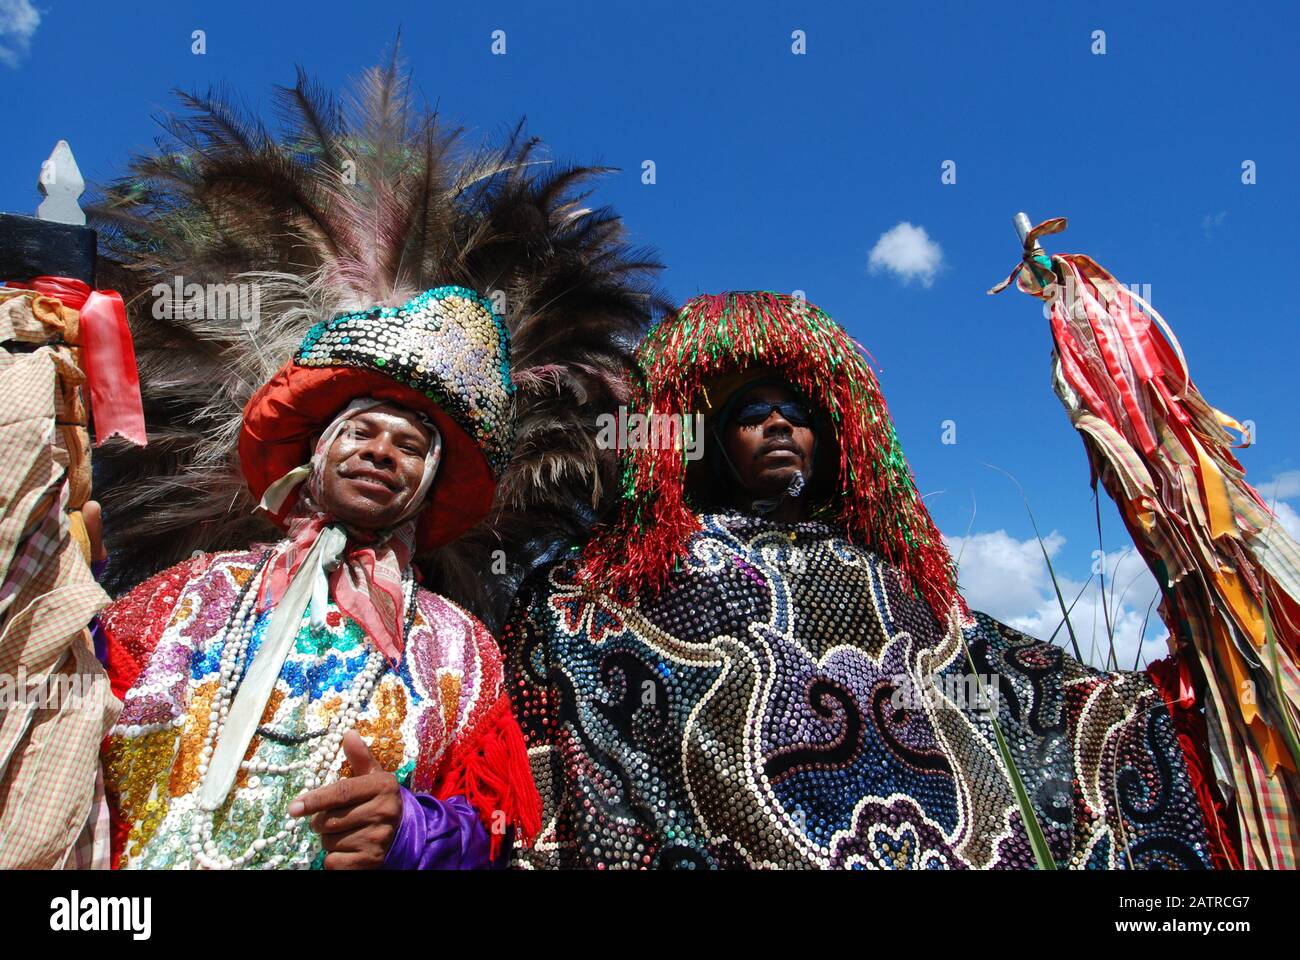 Alliance / Pernambuco / Brésil. 8 Février 2008. Défilé traditionnel de 'Maracatus' pendant les jours du Carnaval, dans la campagne du Nord-est. Banque D'Images